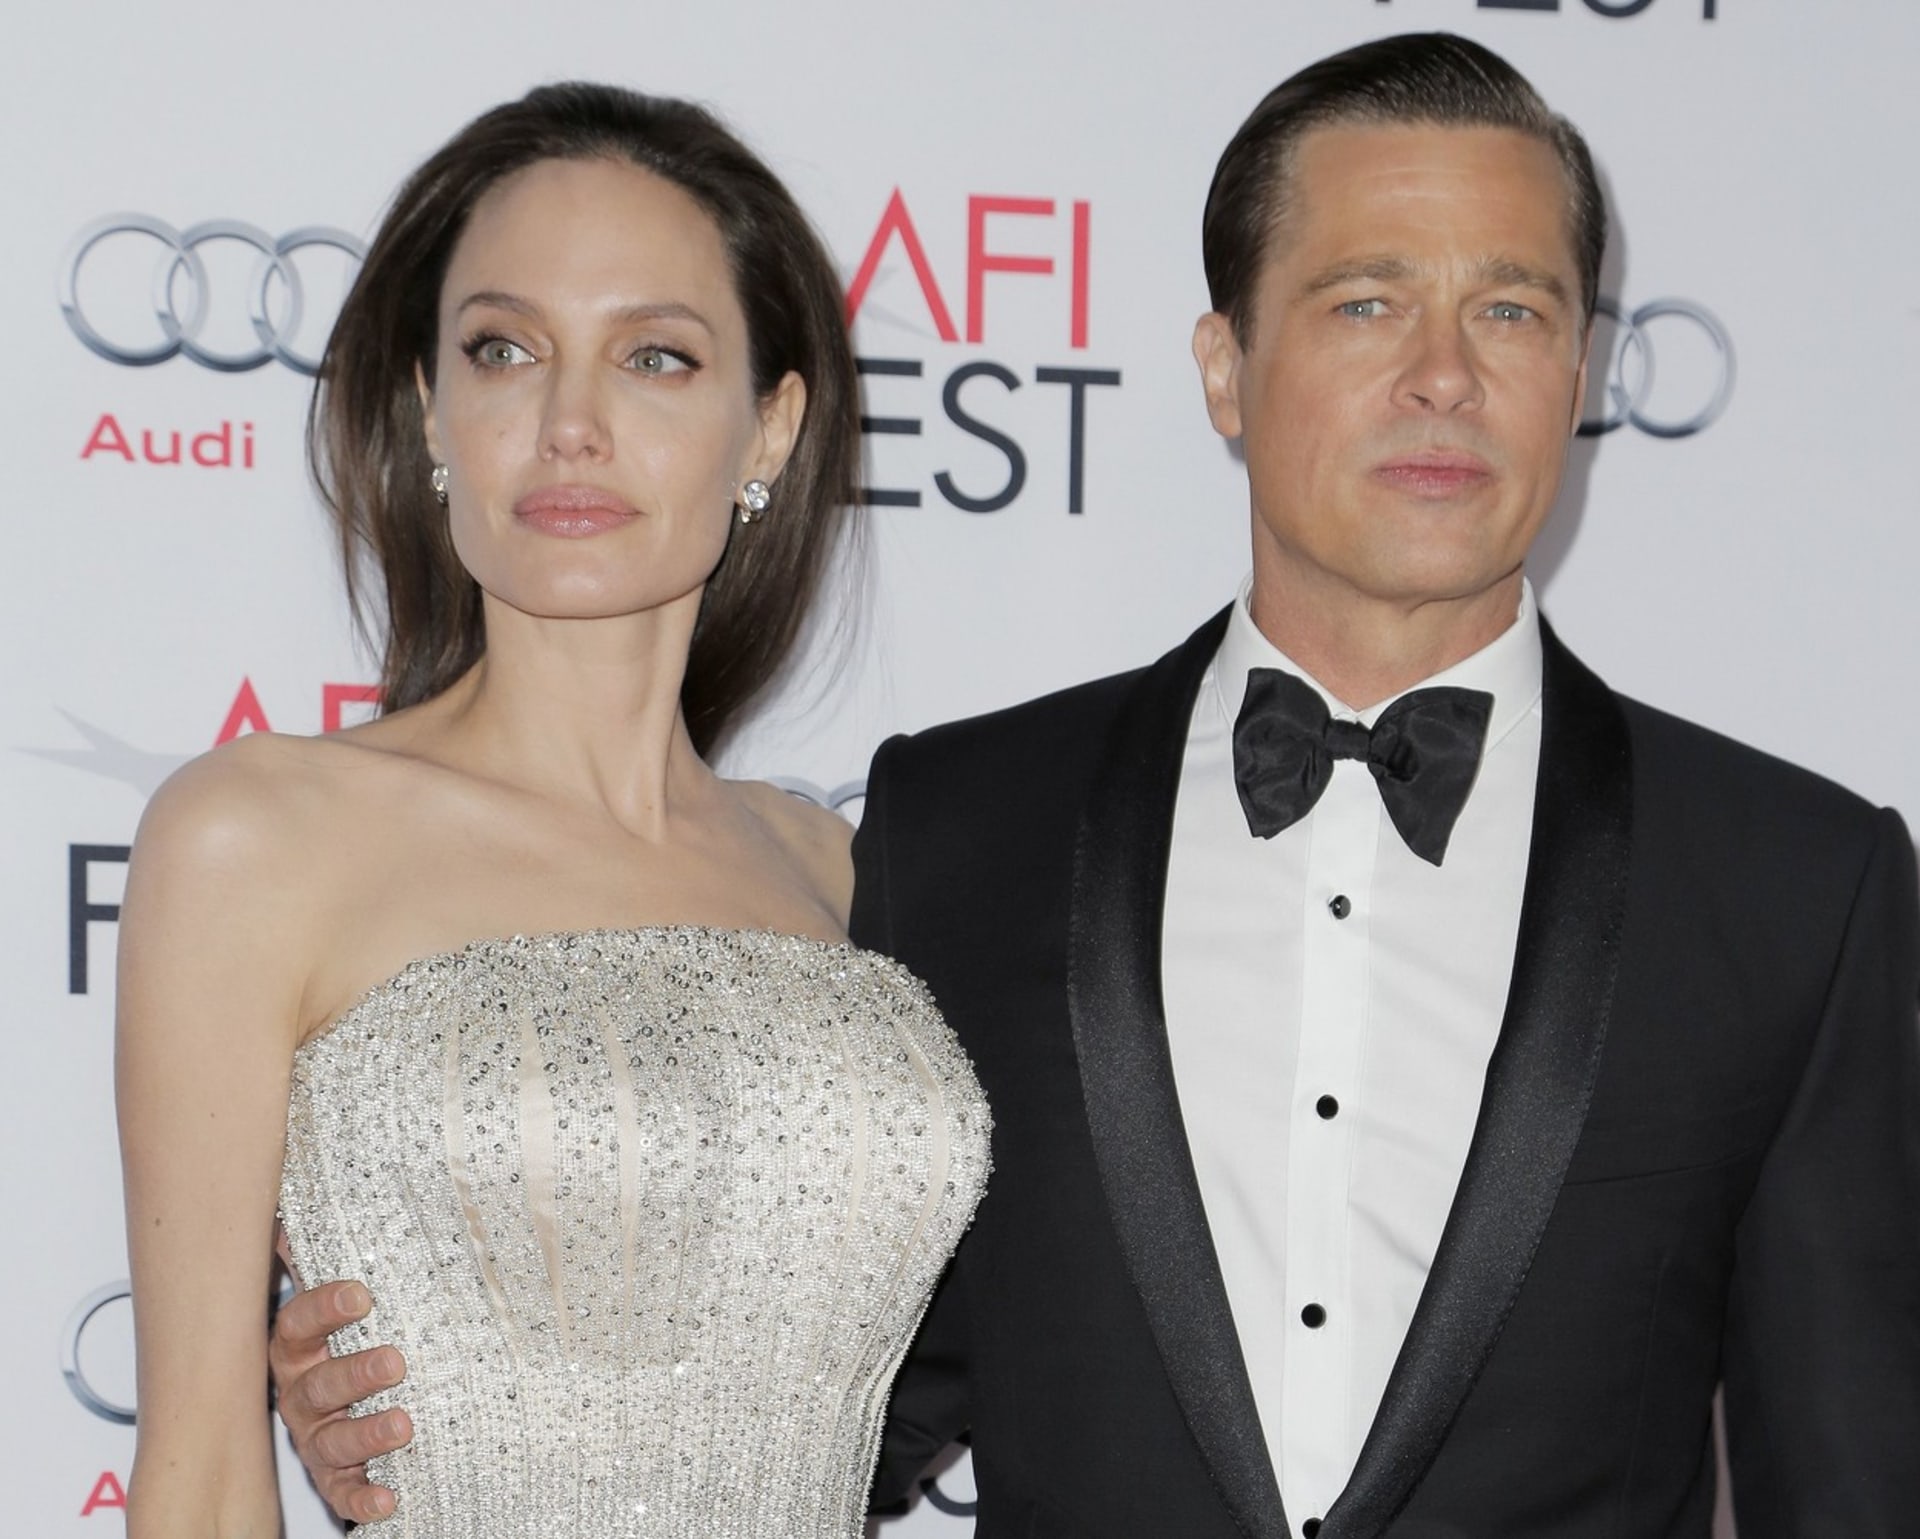 Stejně rychle, jako se dali Brad Pitt a Angelina Jolie v roce 2005 během natáčení filmu Mr. & Mrs. Smith dohromady, tak došlo před čtyřmi lety k jejich odloučení. O jejich upadajícím vztahu natočila Jolie v roce 2015 film U moře, o rok později se pár rozhodl rozvést. Důvodem bylo prý zachování zdraví jejich rodiny. Dodnes však rozvod nebyl dokončen, jednání probíhají v soukromí.